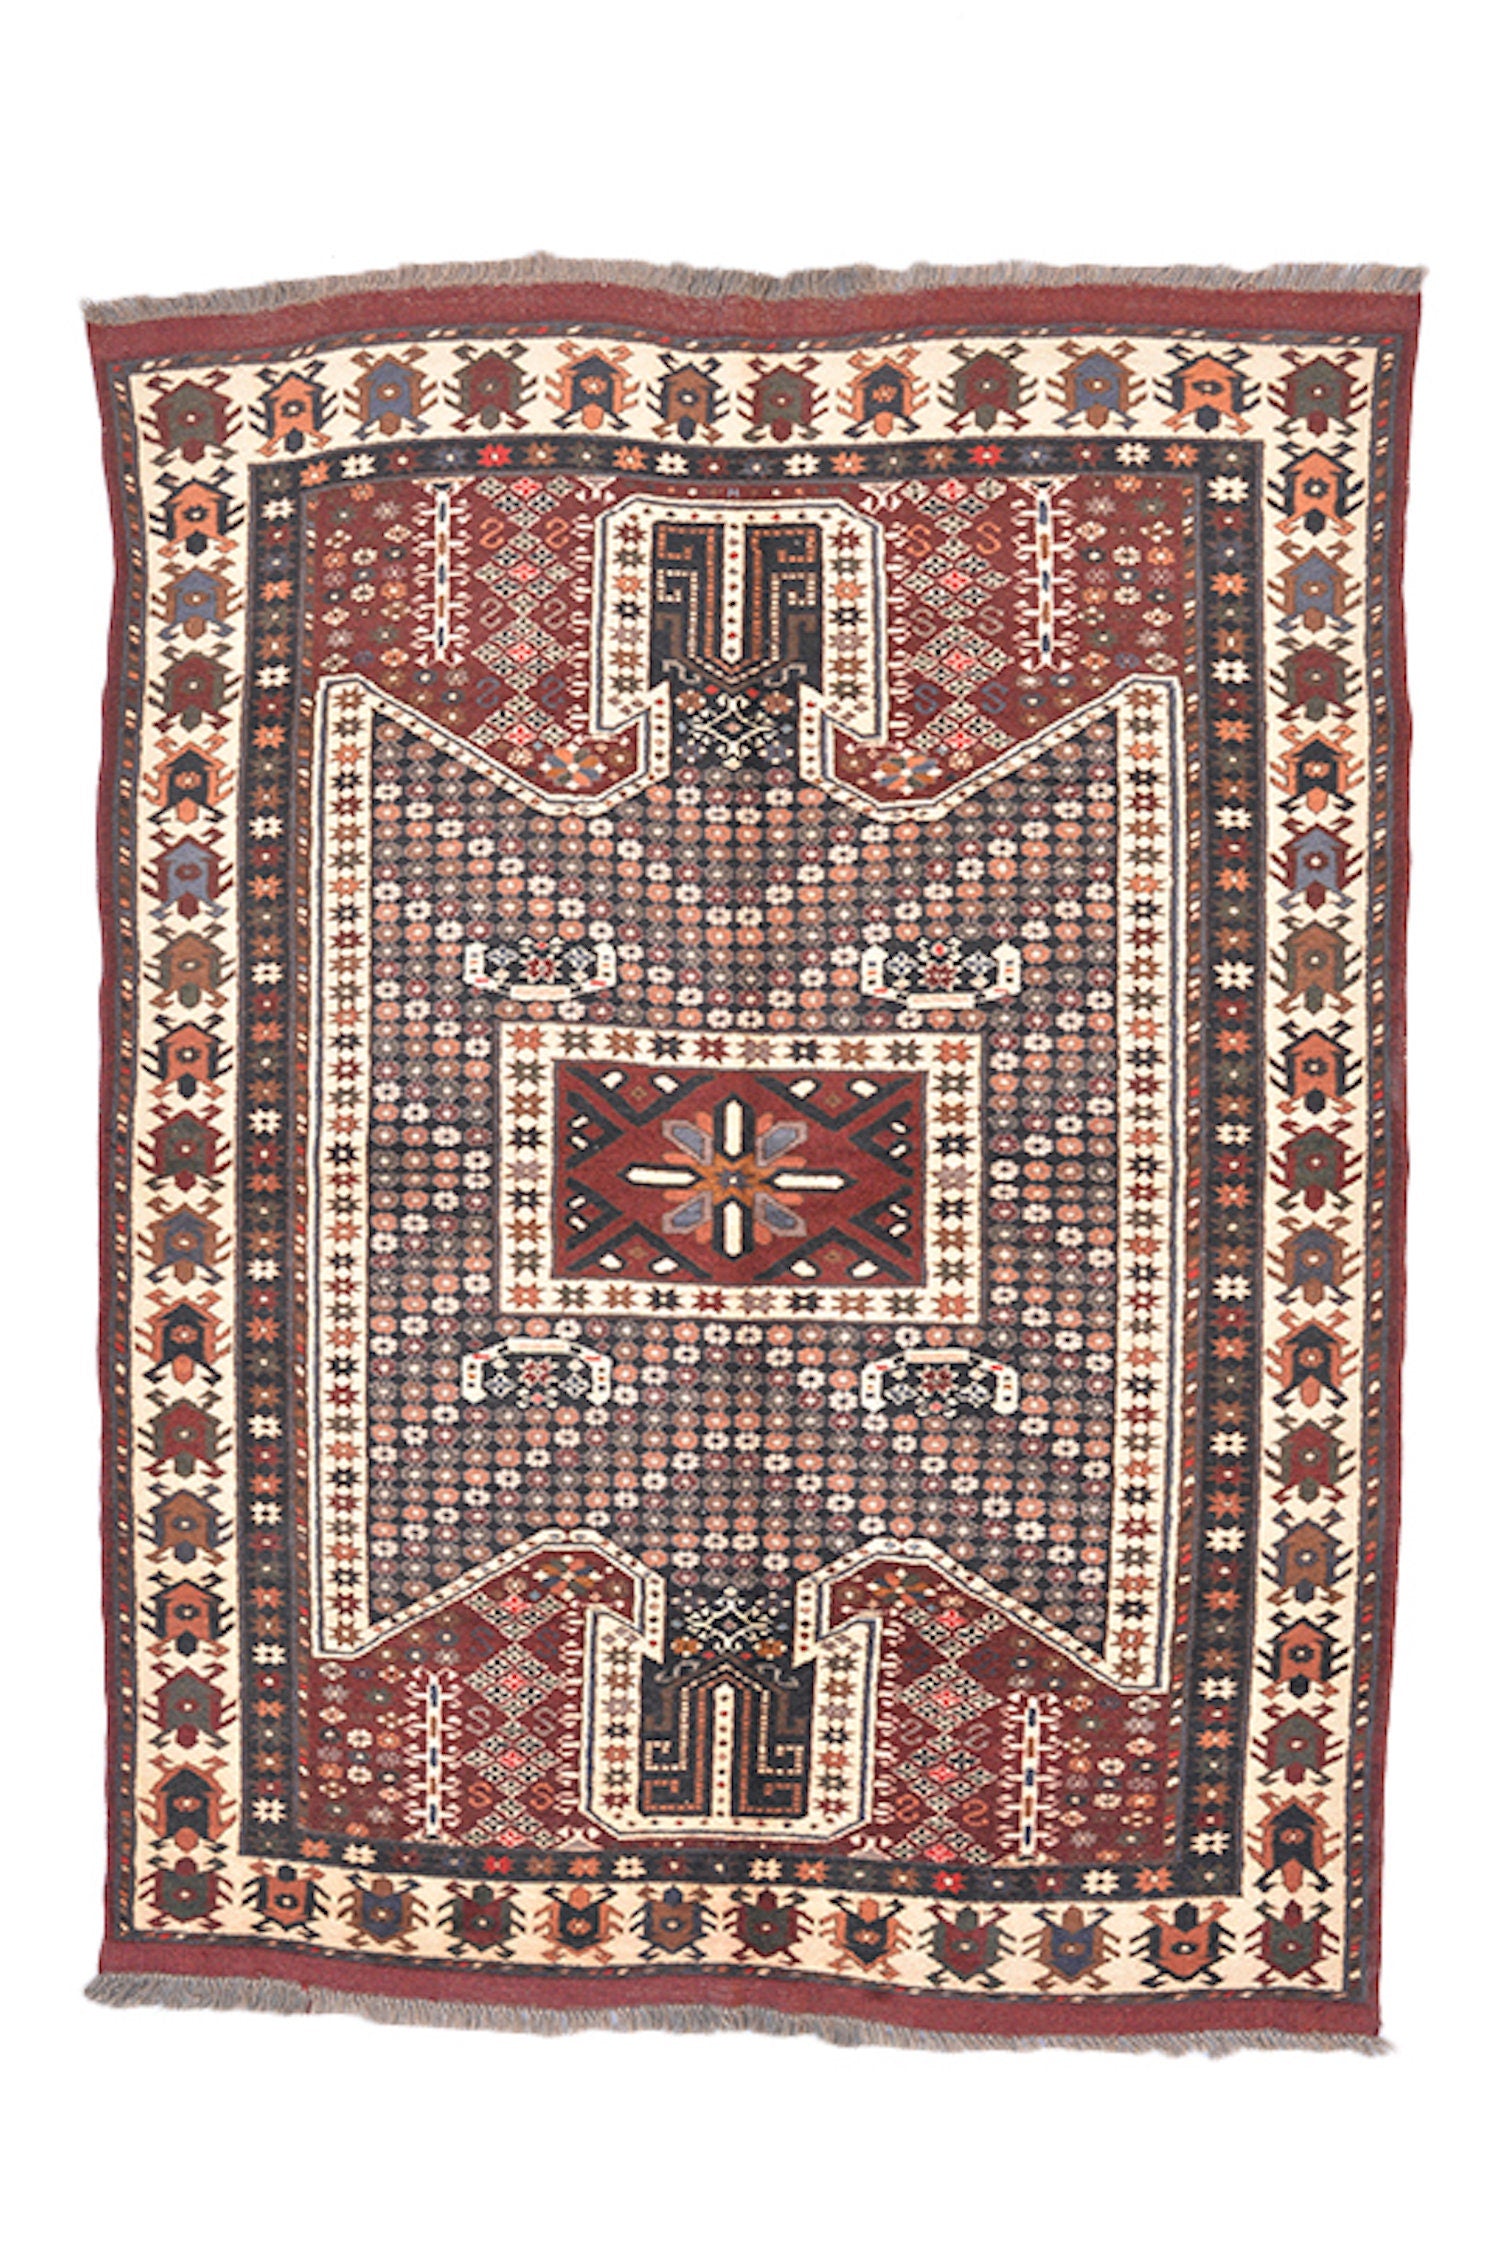 Vintage Area Rug | Red Brown Rug | 4 x 6 Ft | Geometric Tribal | Rustic Dark Toned Rug | Wool Antique Rug